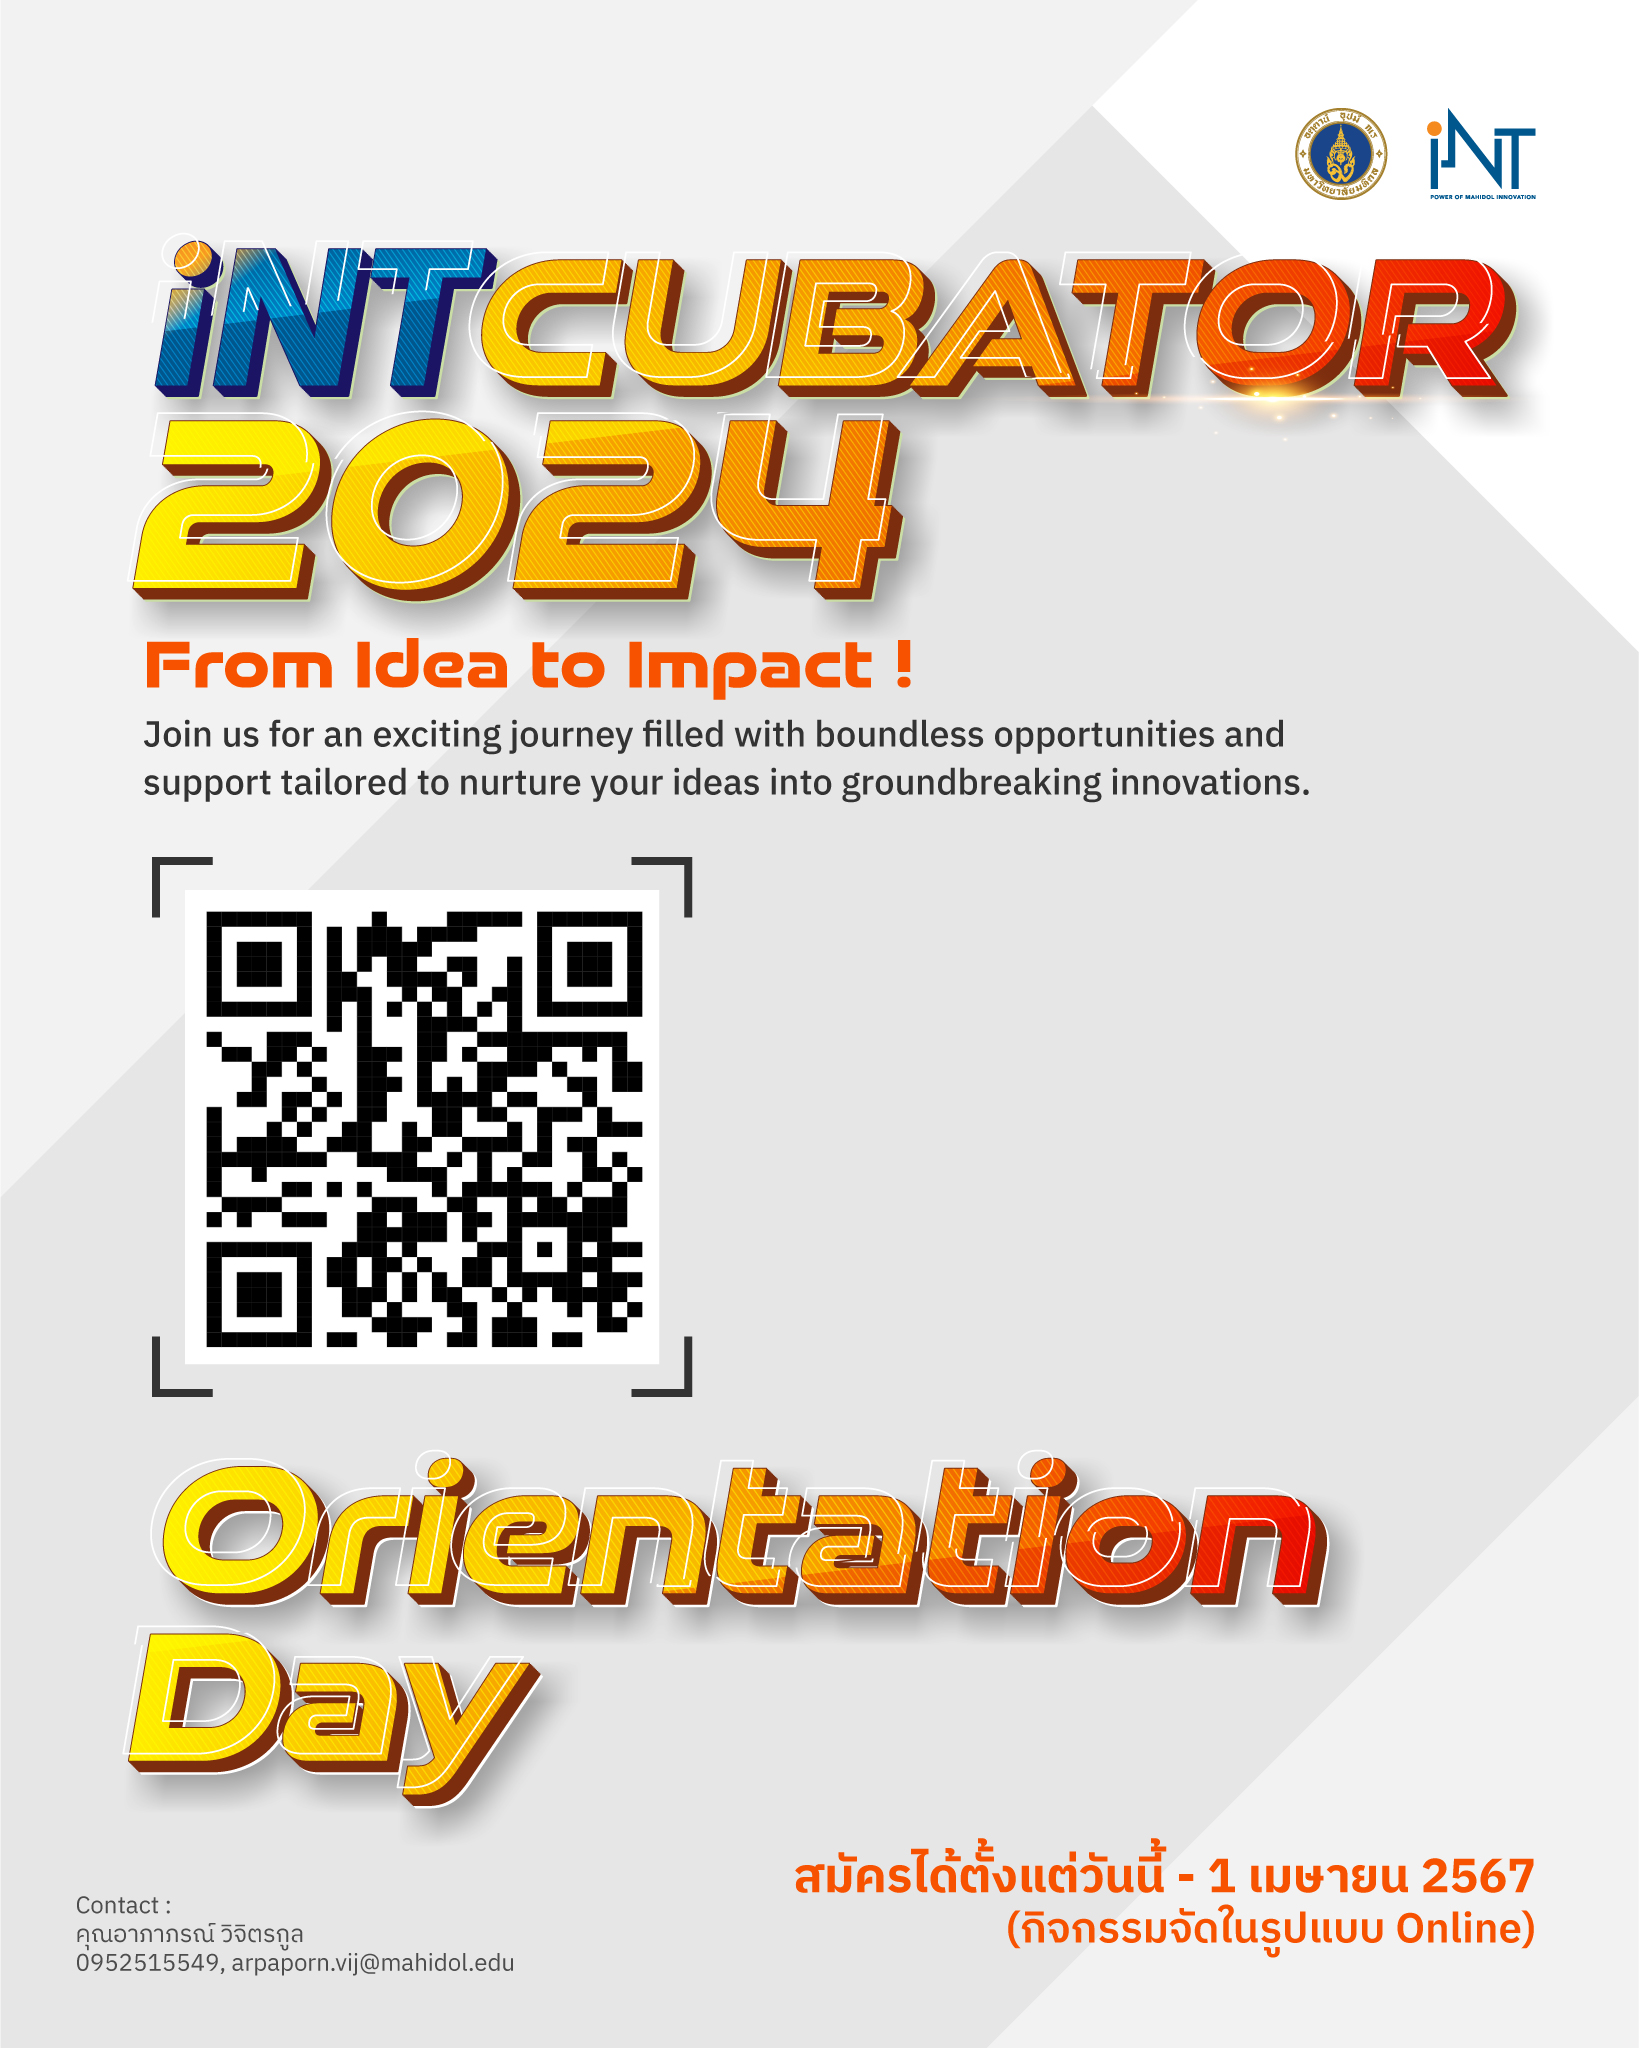 สถาบันบริหารจัดการเทคโนโลยีและนวัตกรรม (iNT) ขอเชิญชวนอาจารย์ นักวิจัย นักศึกษาของ ม.มหิดล ผู้ที่สนใจทำ Startup เข้าร่วมกิจกรรม iNTCUBATORS 2024 From idea to impact : Orientation Day รับฟังการแนะนำโครงการ iNTCUBATORS 2024